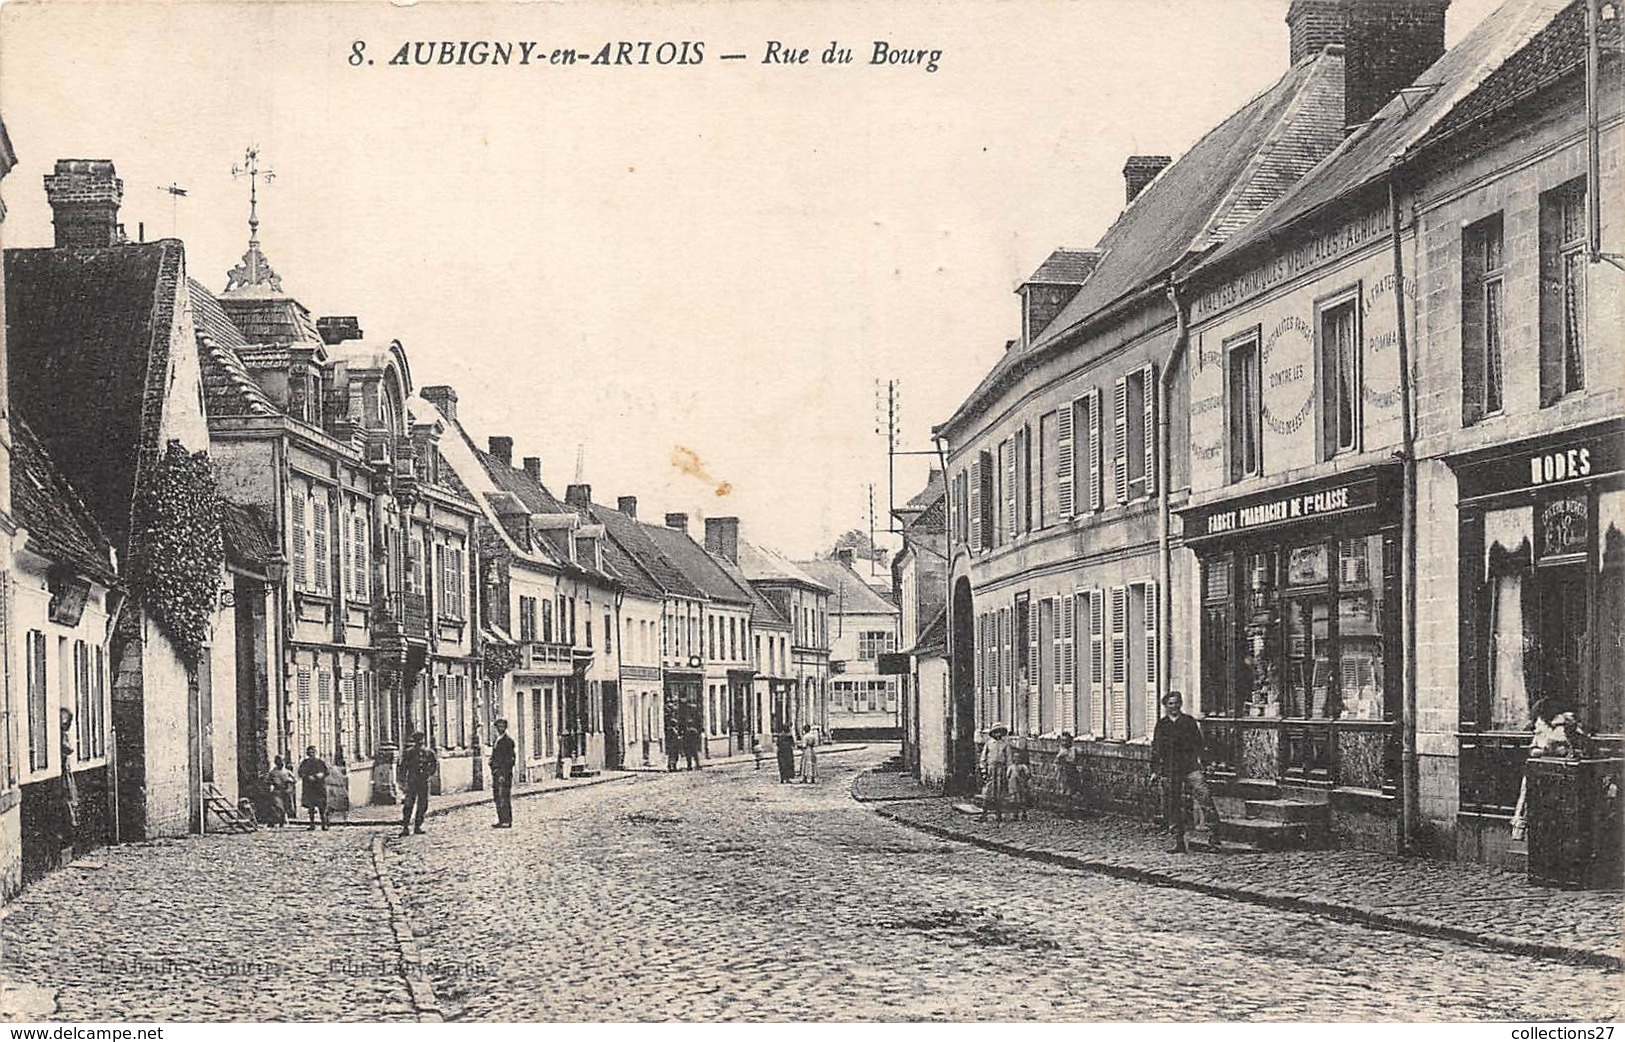 62-ABIGNY-EN-ARTOIS- RUE DU BOURG - Aubigny En Artois